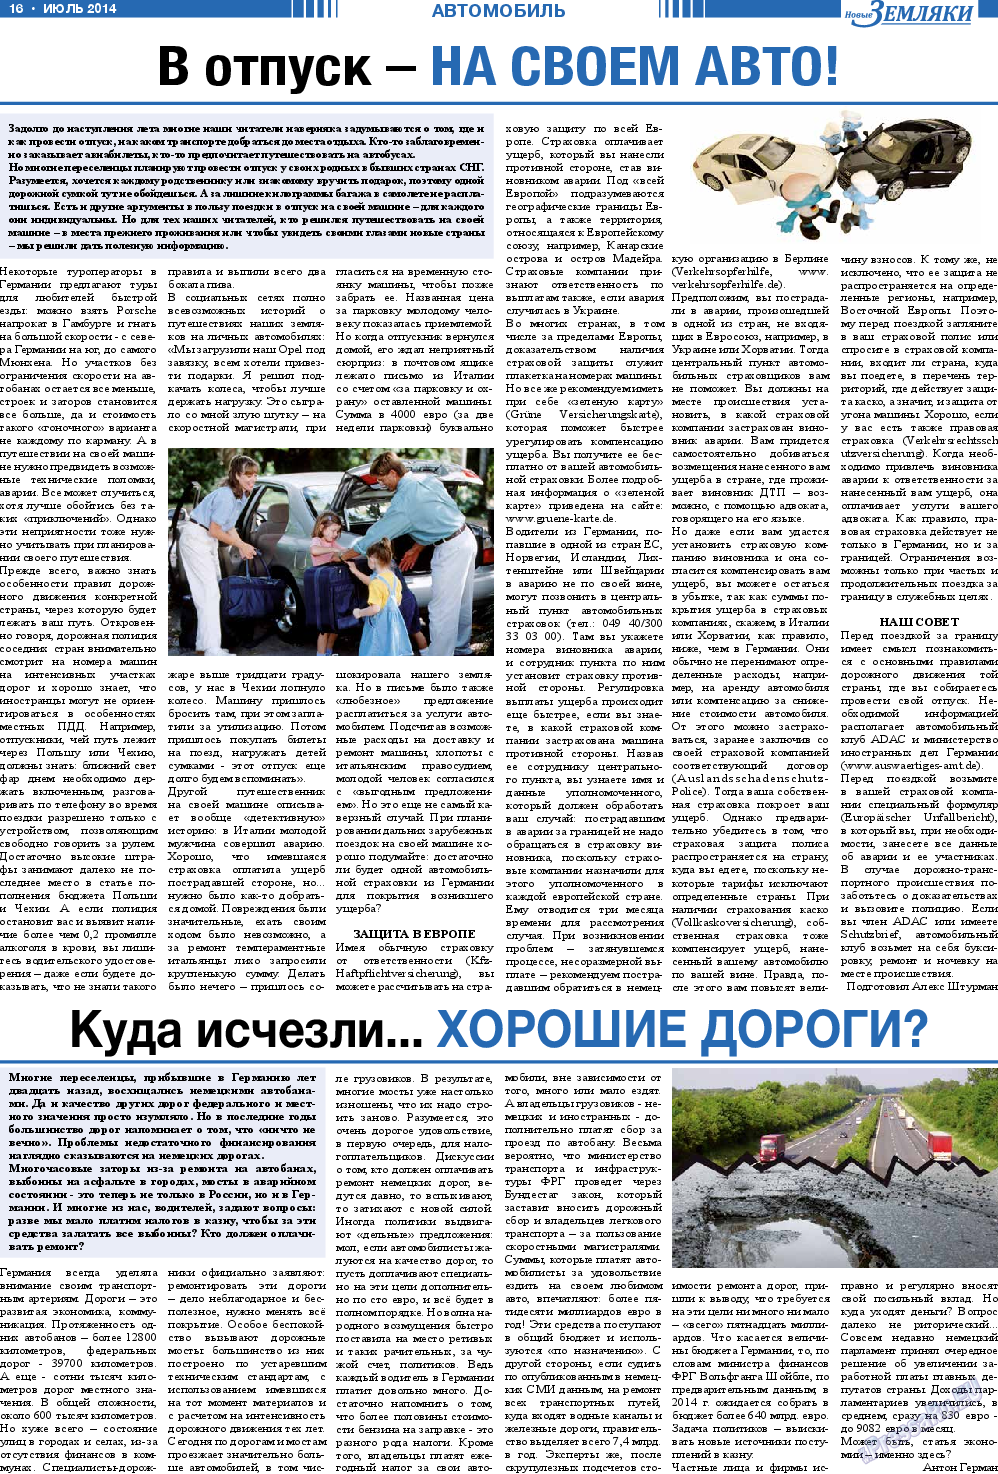 Новые Земляки, газета. 2014 №7 стр.16